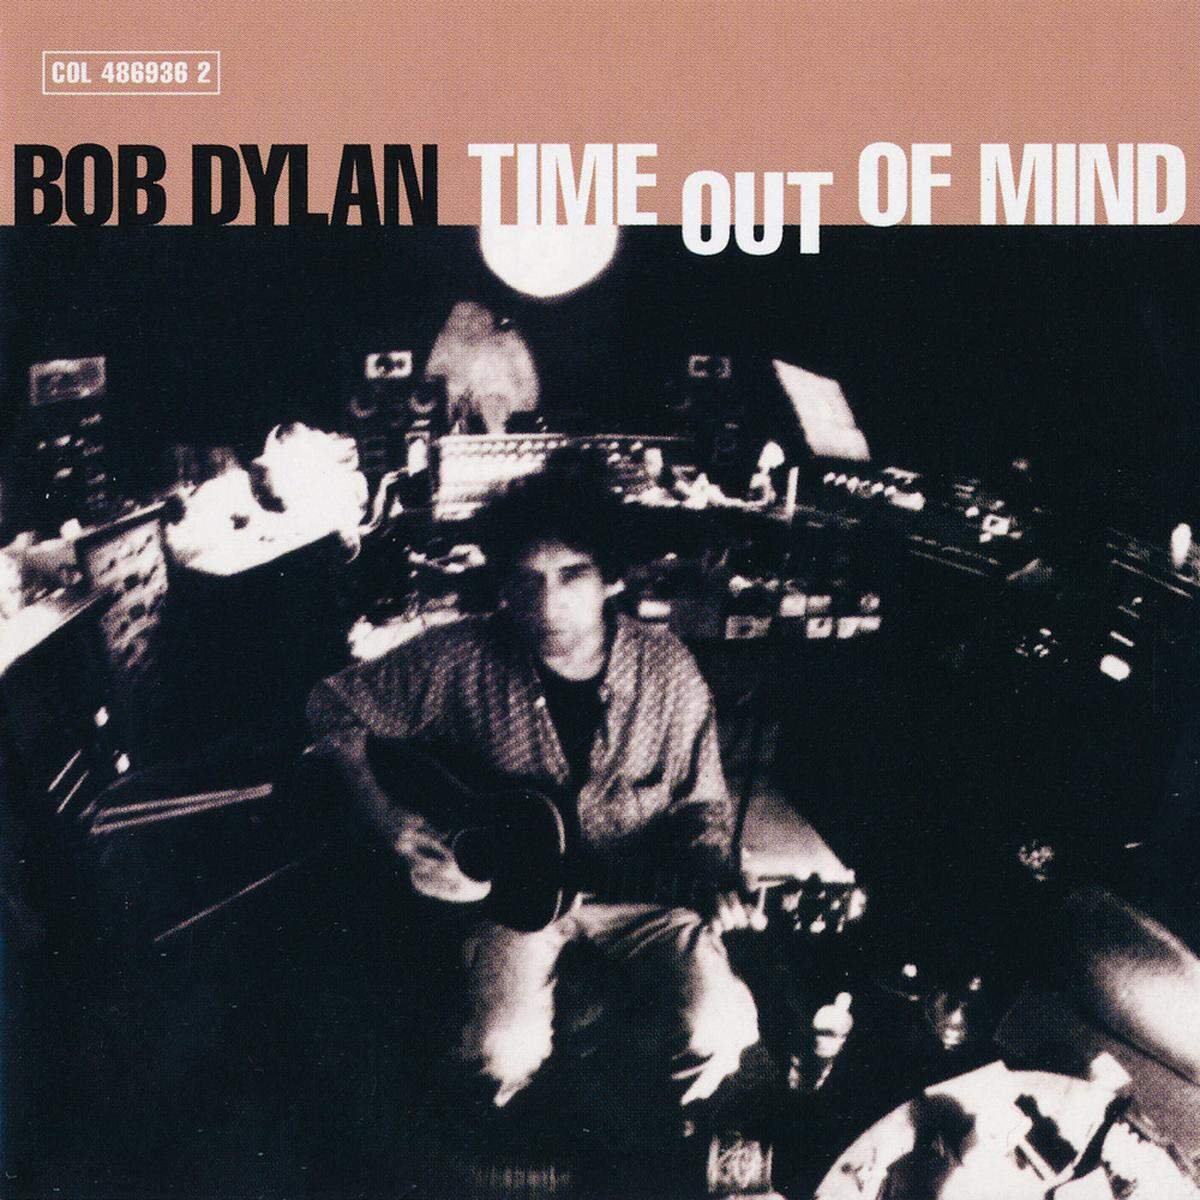 1997 Die Achtziger gelten nicht als Dylans fruchtbarste Zeit (trotz starker Songs wie "Most of the Time"), aber mit "Time Out of Mind" schloss der Musiker an frühere Erfolge an. Erstmals seit 1990 veröffentlichte er darauf wieder eigene Songs. Musikalisch lässt es sich dem Genre Americana zuordnen. Anspieltipps:  "Love Sick" "Make You Feel My Love" "Highlands"   